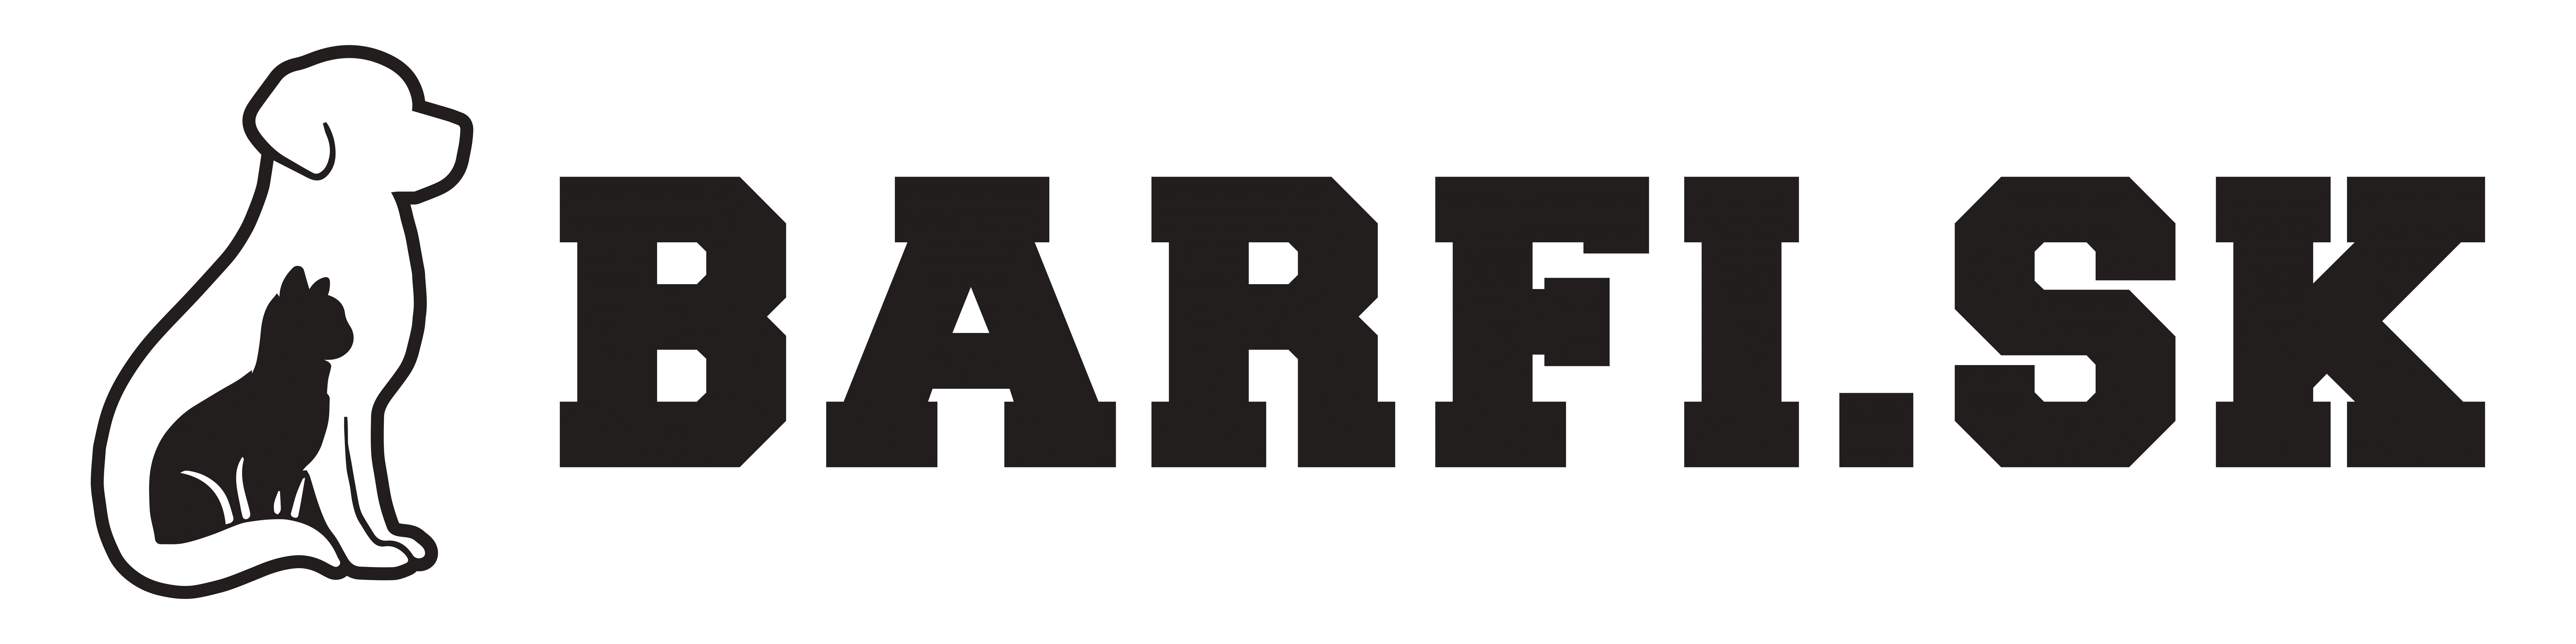 barfi_logo-1